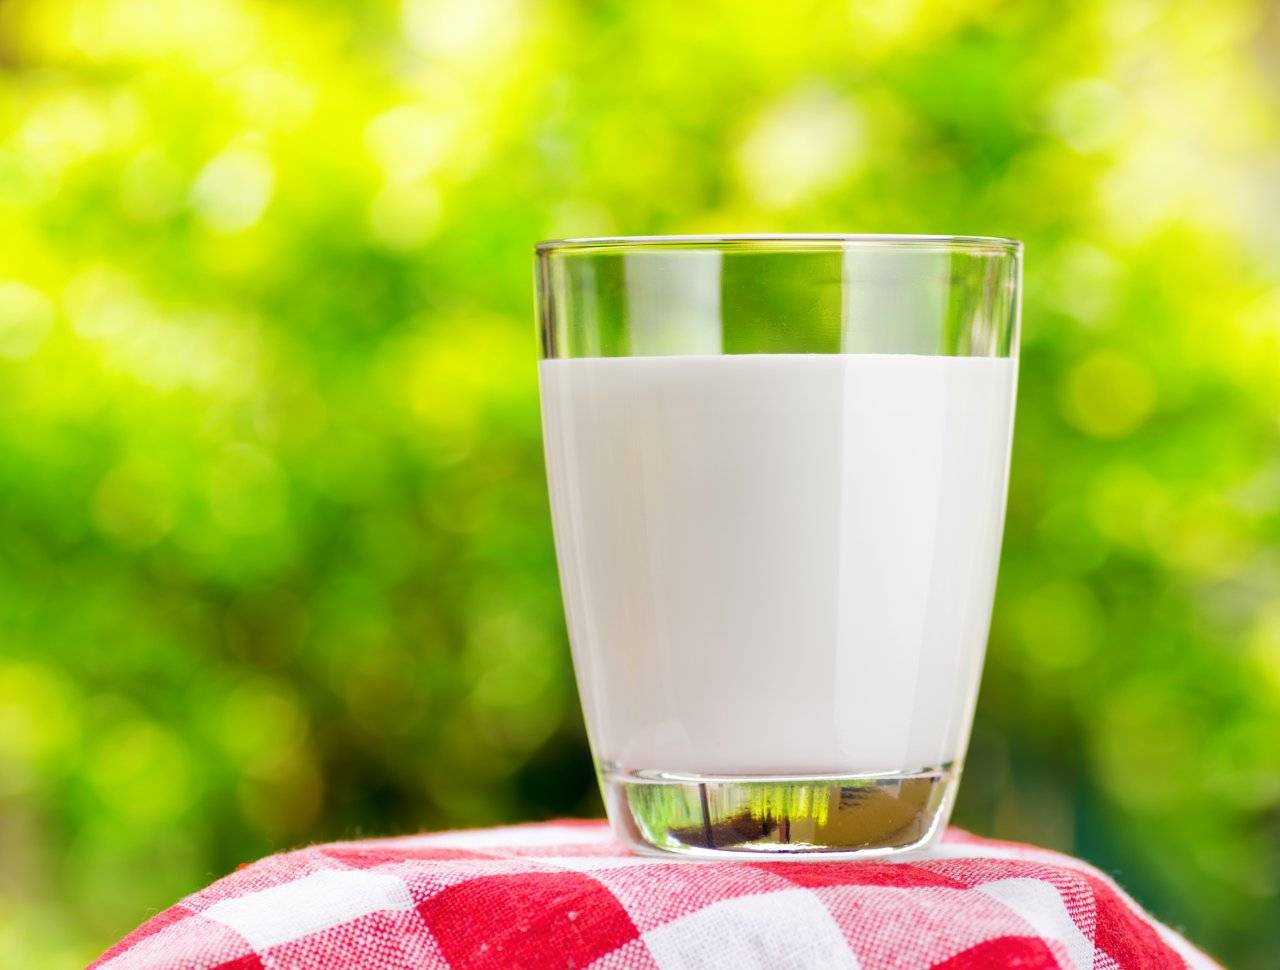 نکات مهم و اساسی درباره شیر کم چرب و پر چرب